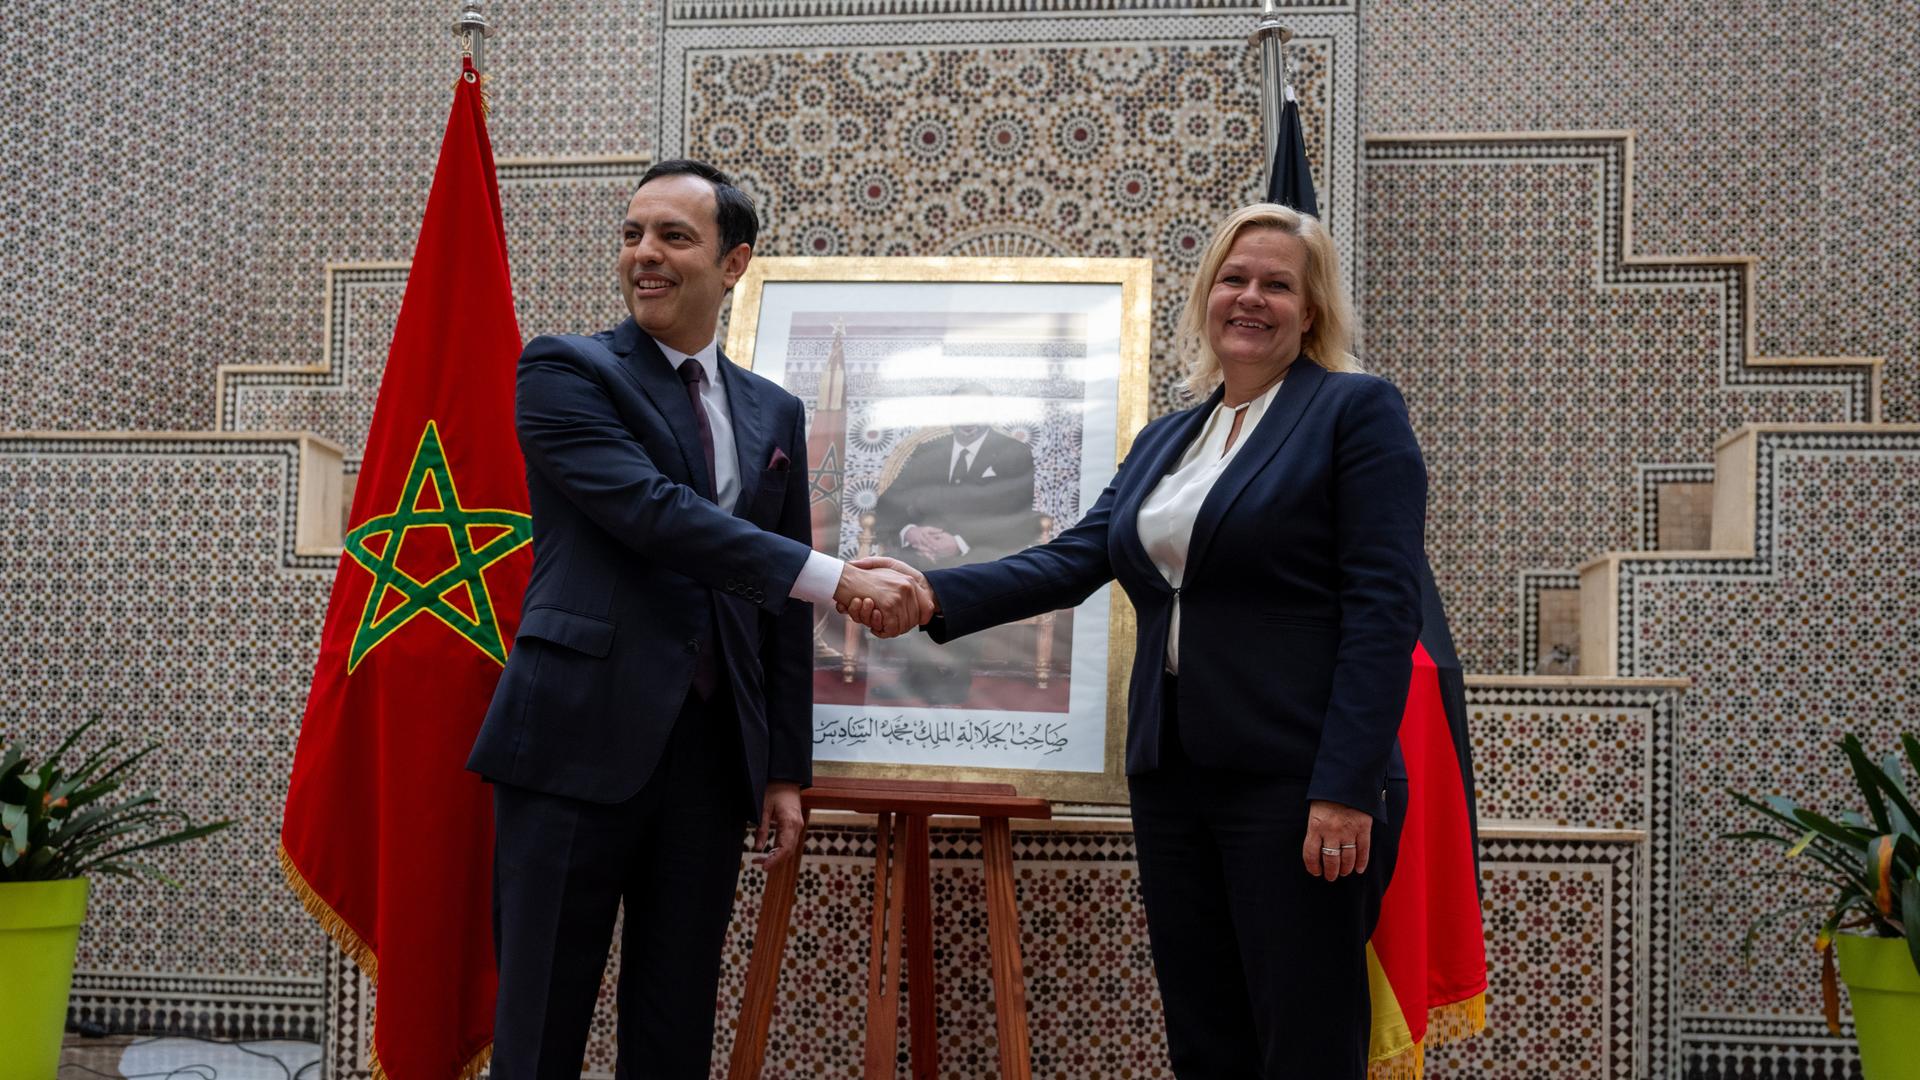 Younes Sekkouri schüttelt Nancy Faeser die Hand. Im Hintergrund steht ein Foto von König Mohammed VI zwischen Flaggen von Marokko und Deutschland.